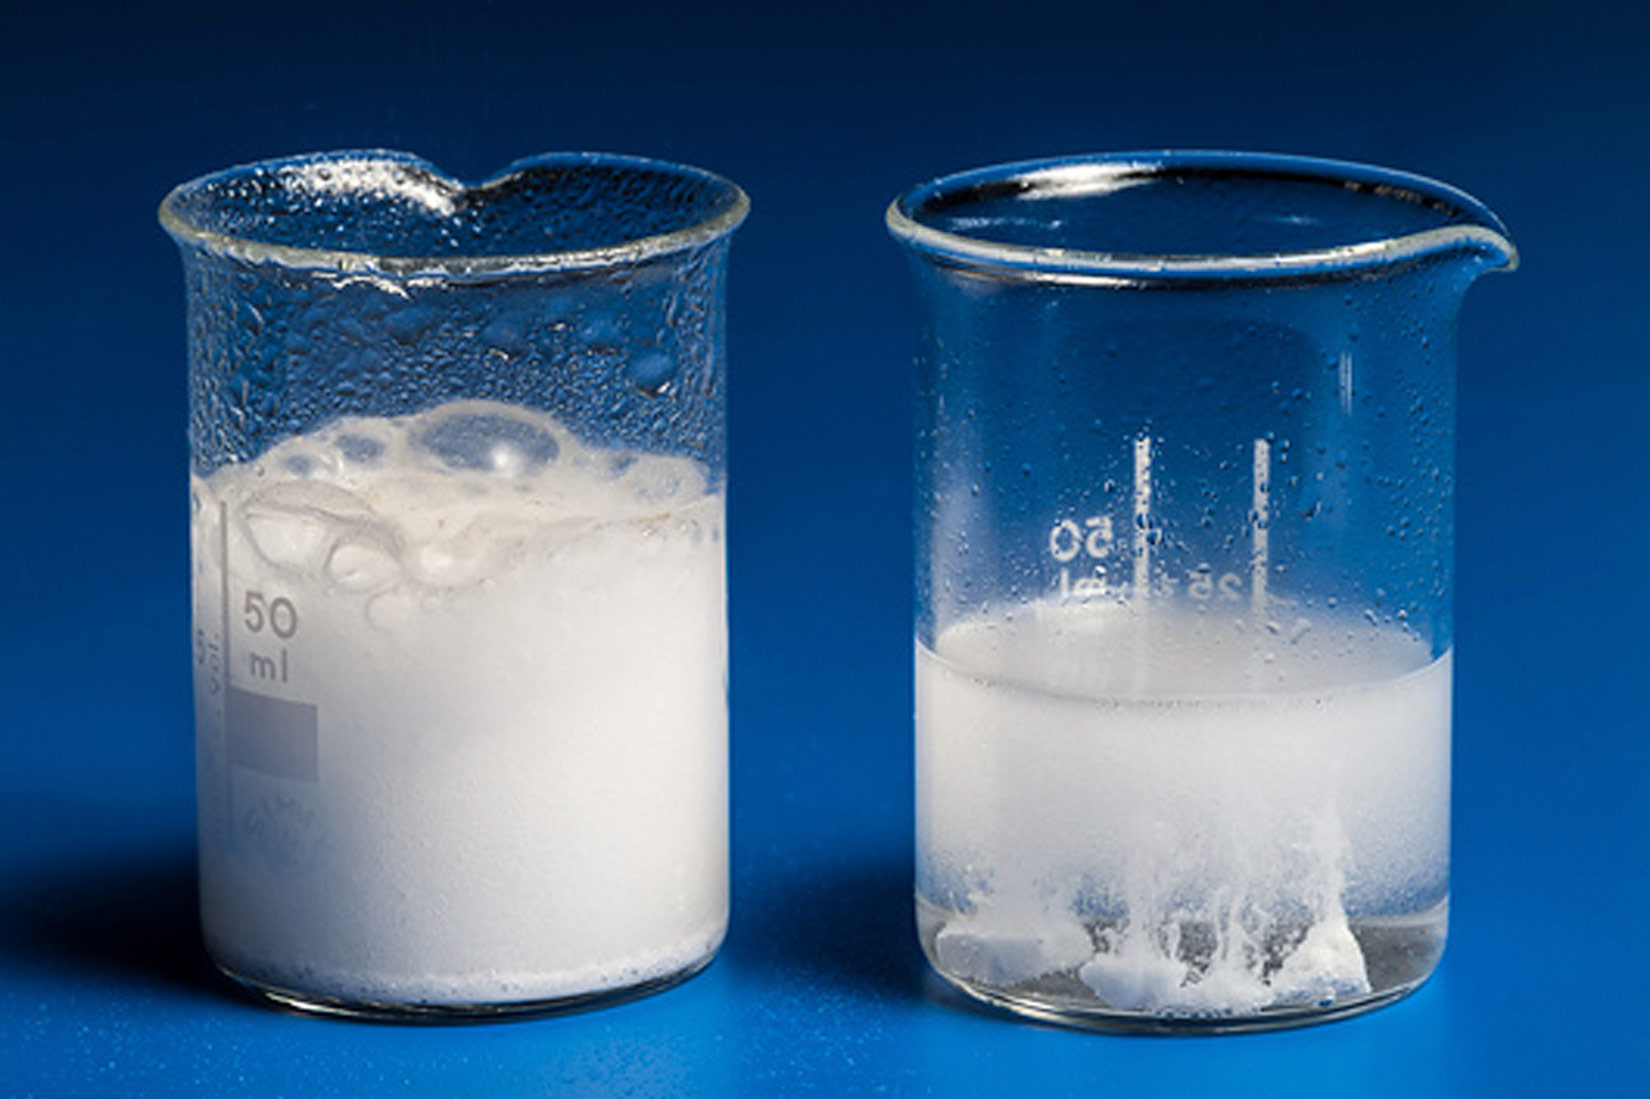 Fotografija prikazuje dvije laboratorijske čaše, u obje čaše se nalazi tekućina bijele boje, sastoji se od razrijeđene klorovodične kiseline i vapnenca različite teksture. U prvu čašu je dodan vapnenac u prahu, u drugu komadić vapnenca. Radi veće površine vapnenca u prahu i razrjeđene klorovodične kiseline reakcija je burnija u prvoj čaši.